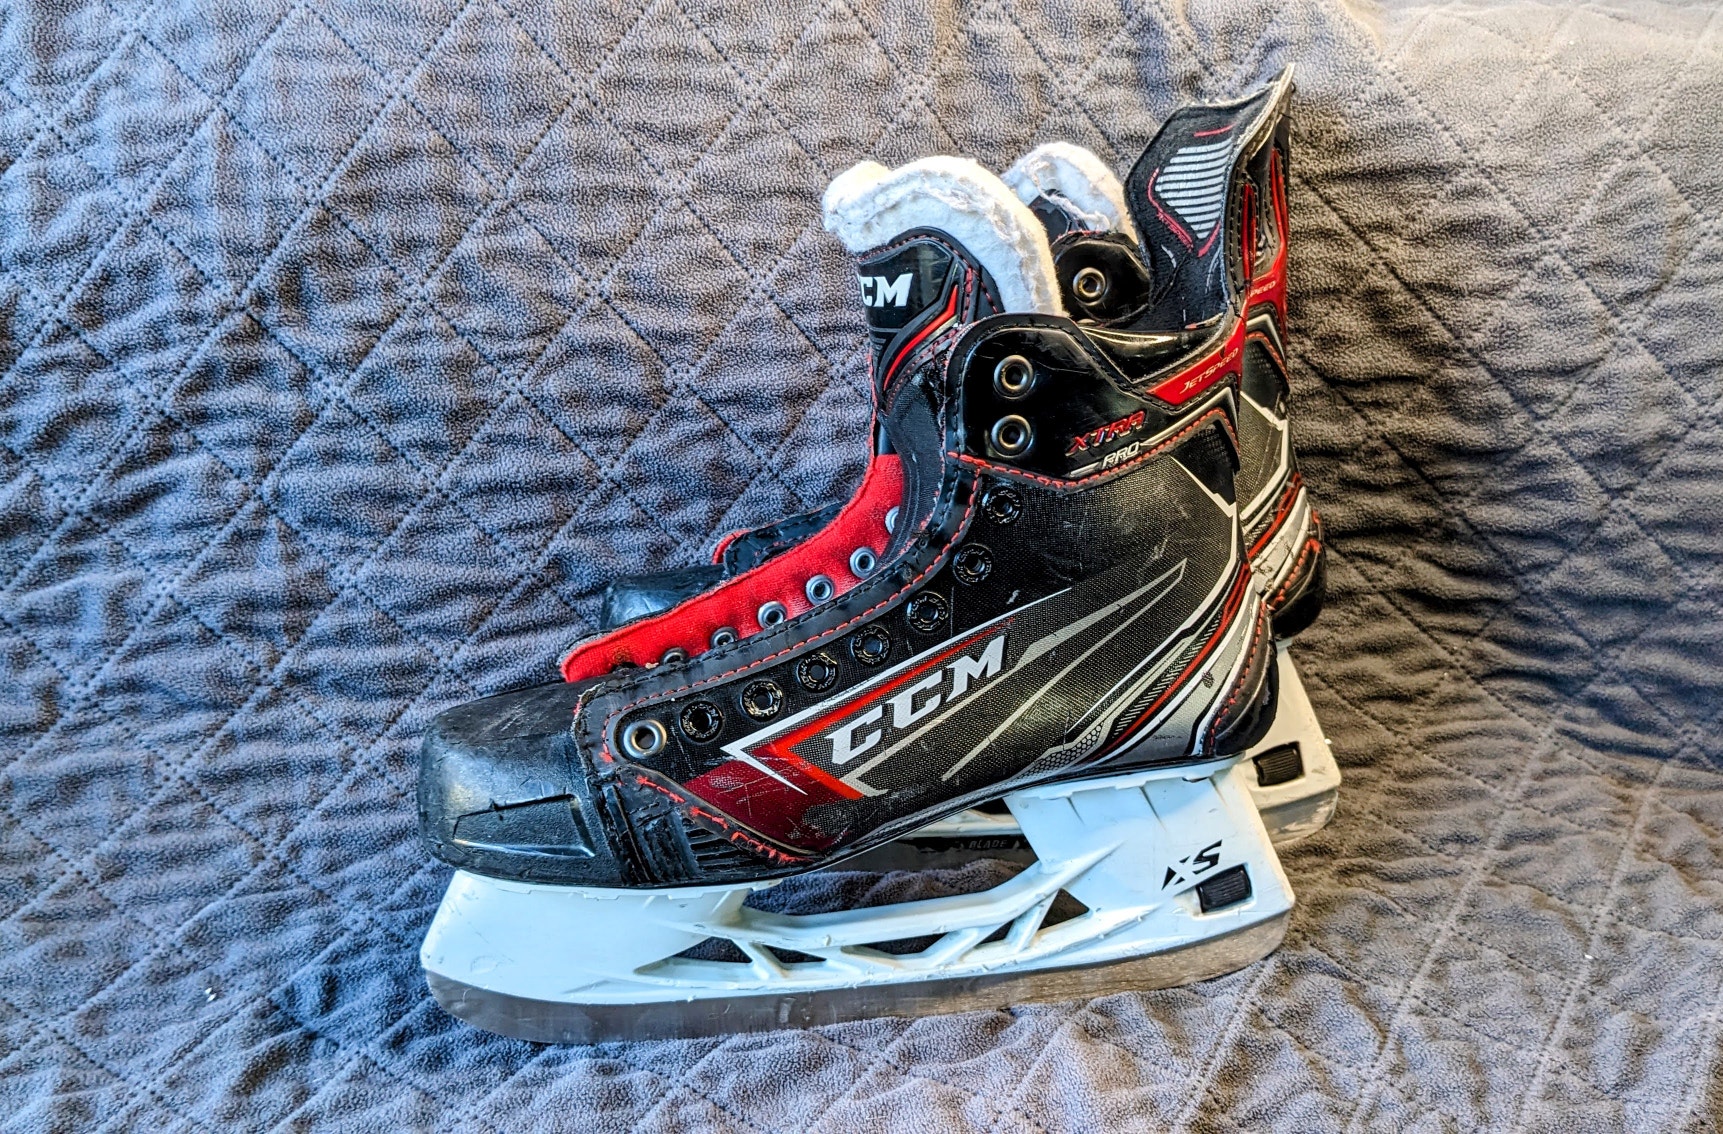 Senior Used 2019 CCM JetSpeed XTRA PRO Hockey Skates Regular Width Size 7.5